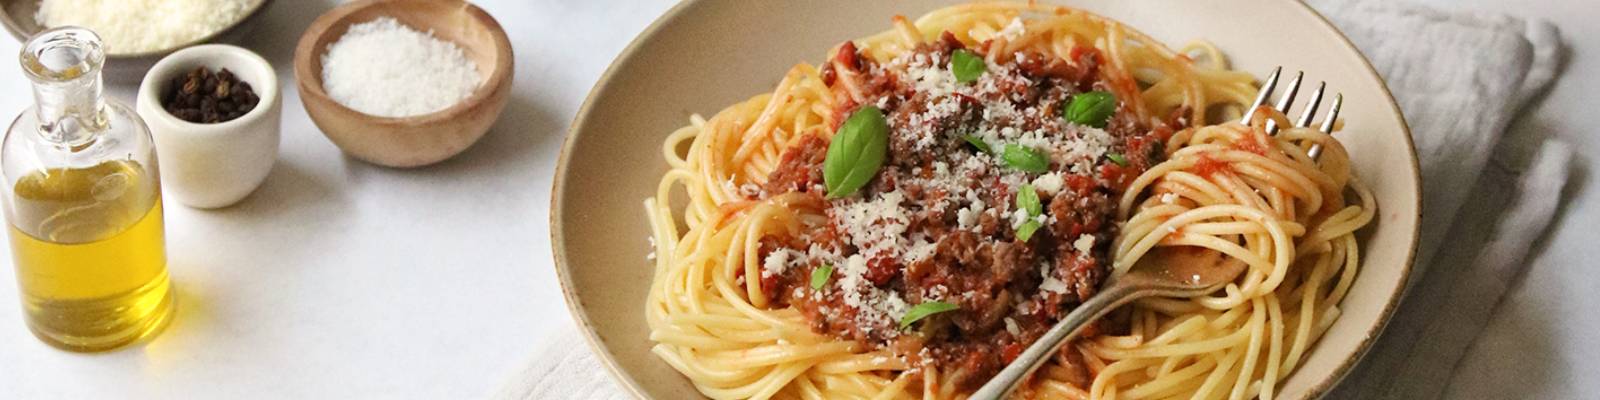 Pasta Garofalo - Spaghetti a la boloñesa